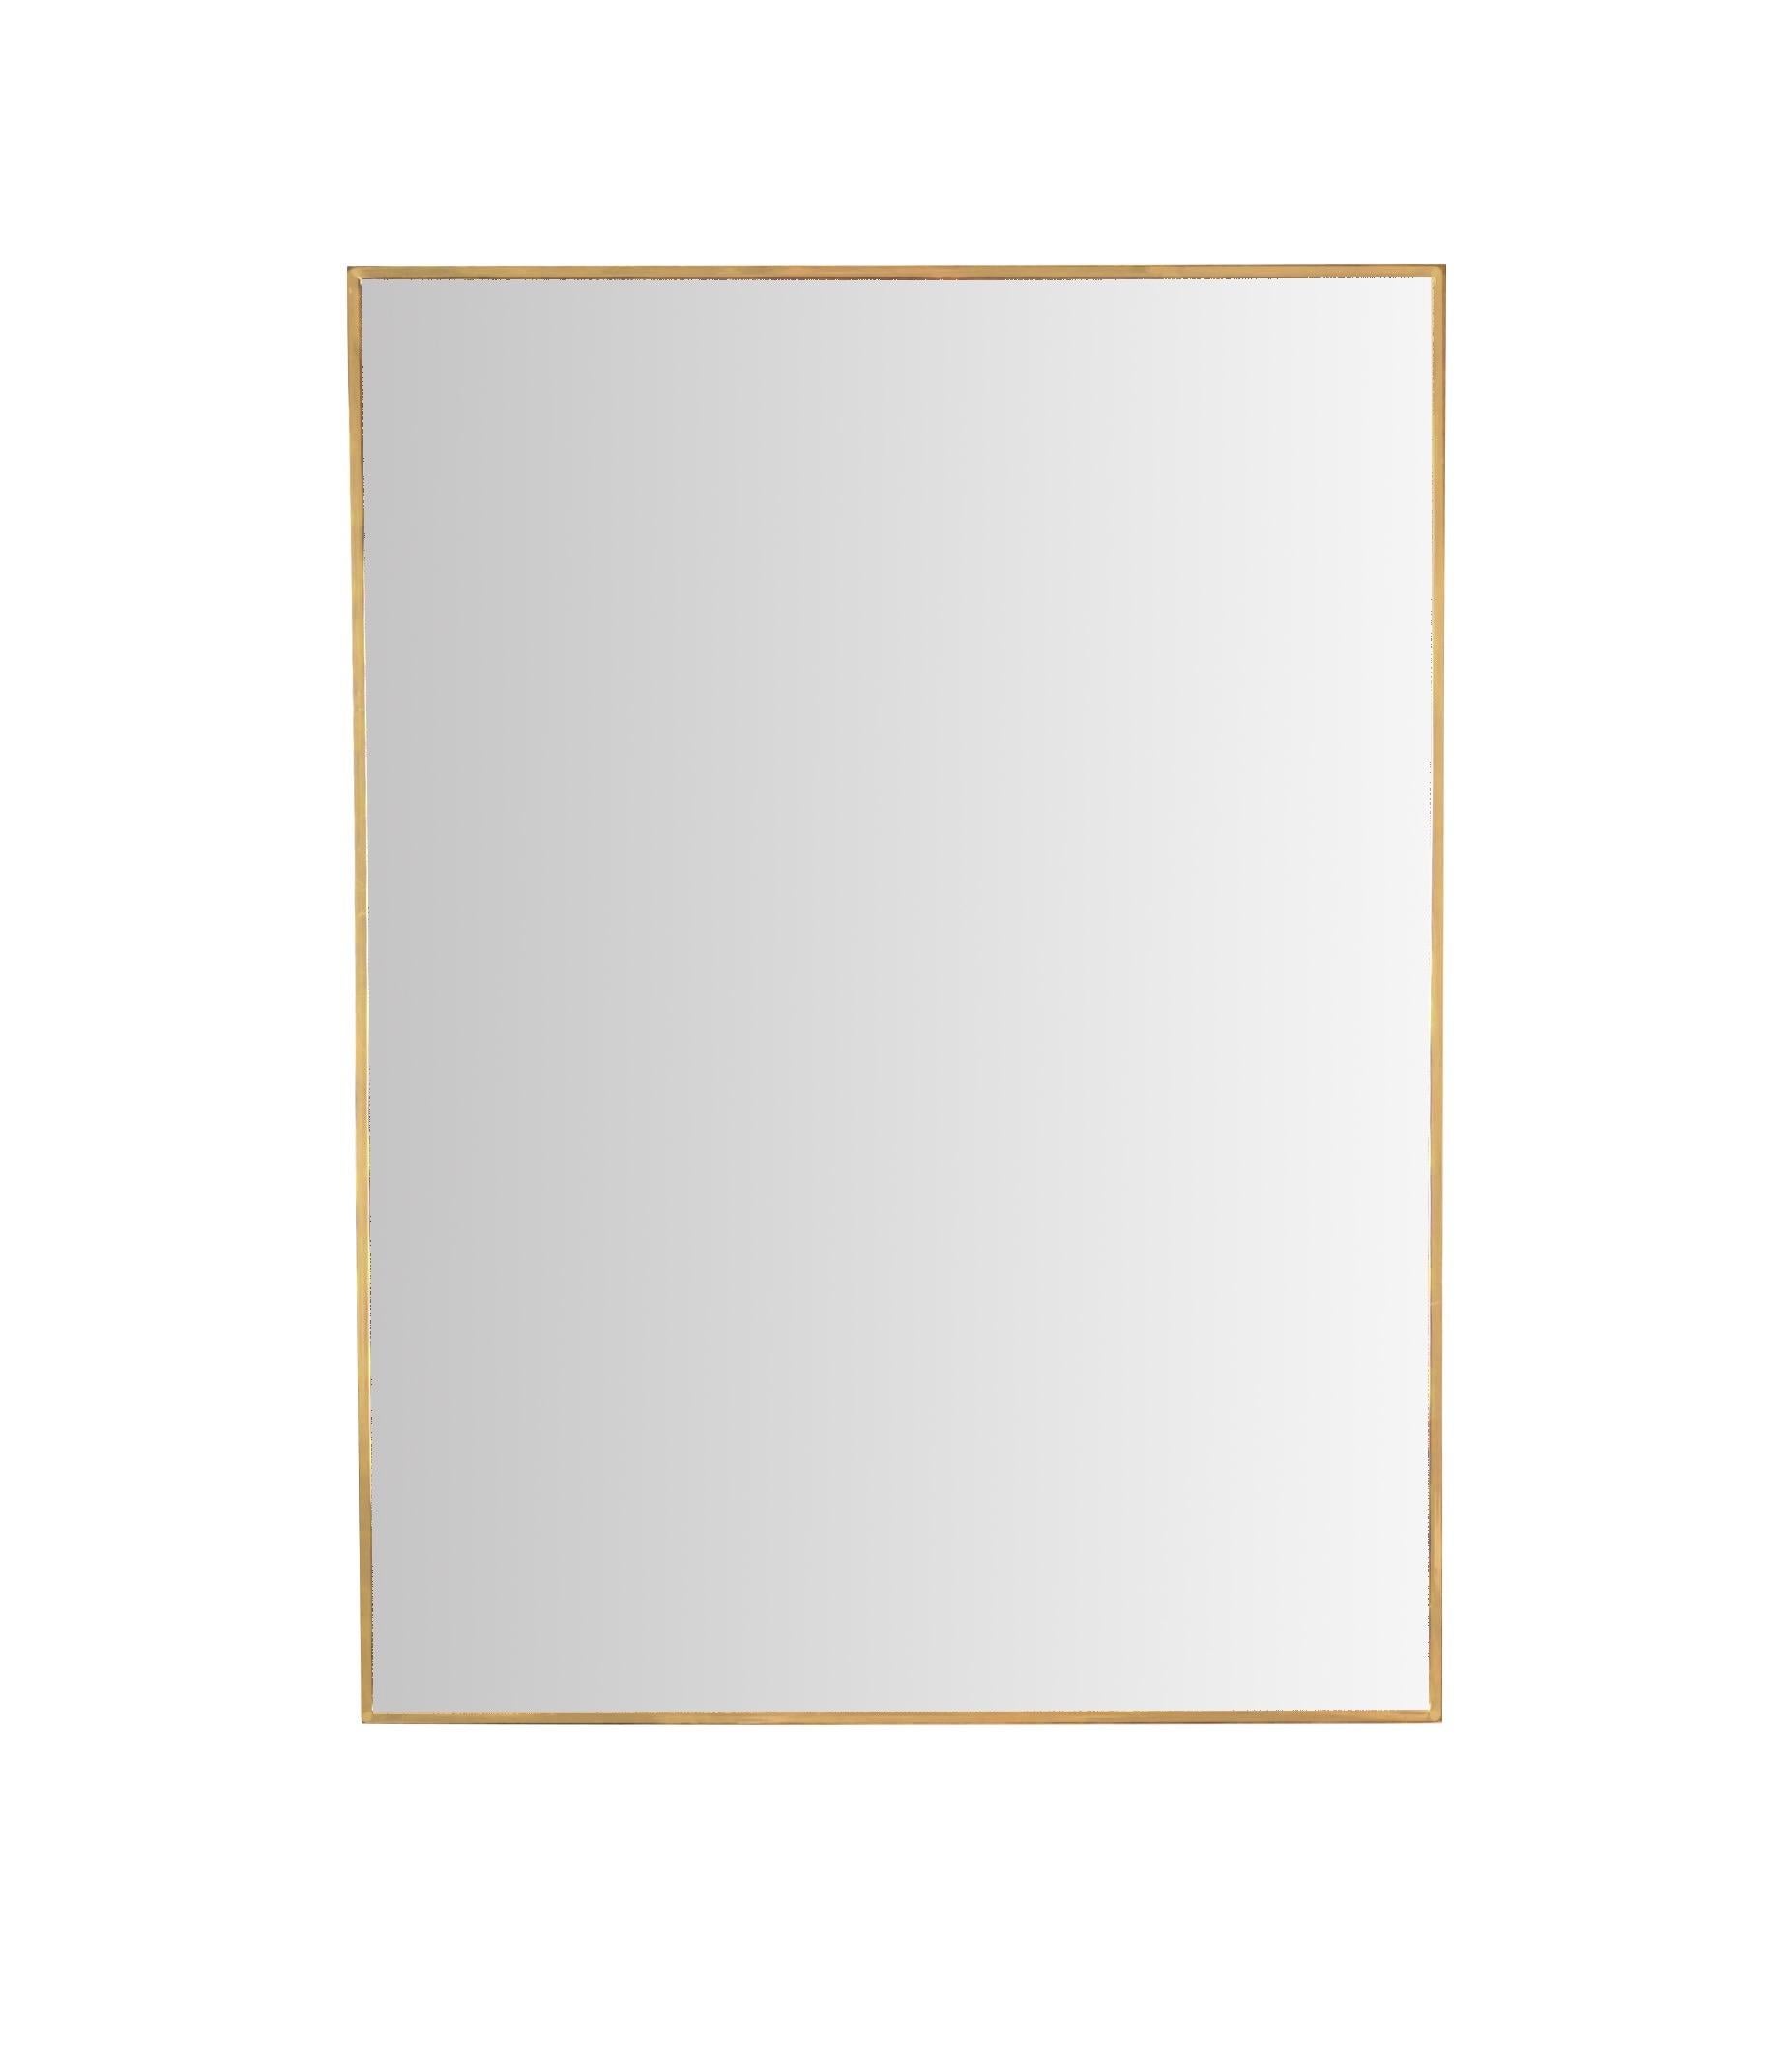 Magnifique grand miroir rectangulaire avec un cadre en laiton massif. Cet élégant miroir a été fabriqué en Italie dans les années 1950.

Ce beau miroir a un cadre rectangulaire en laiton massif, ce qui le rend assez lourd. Le laiton présente une